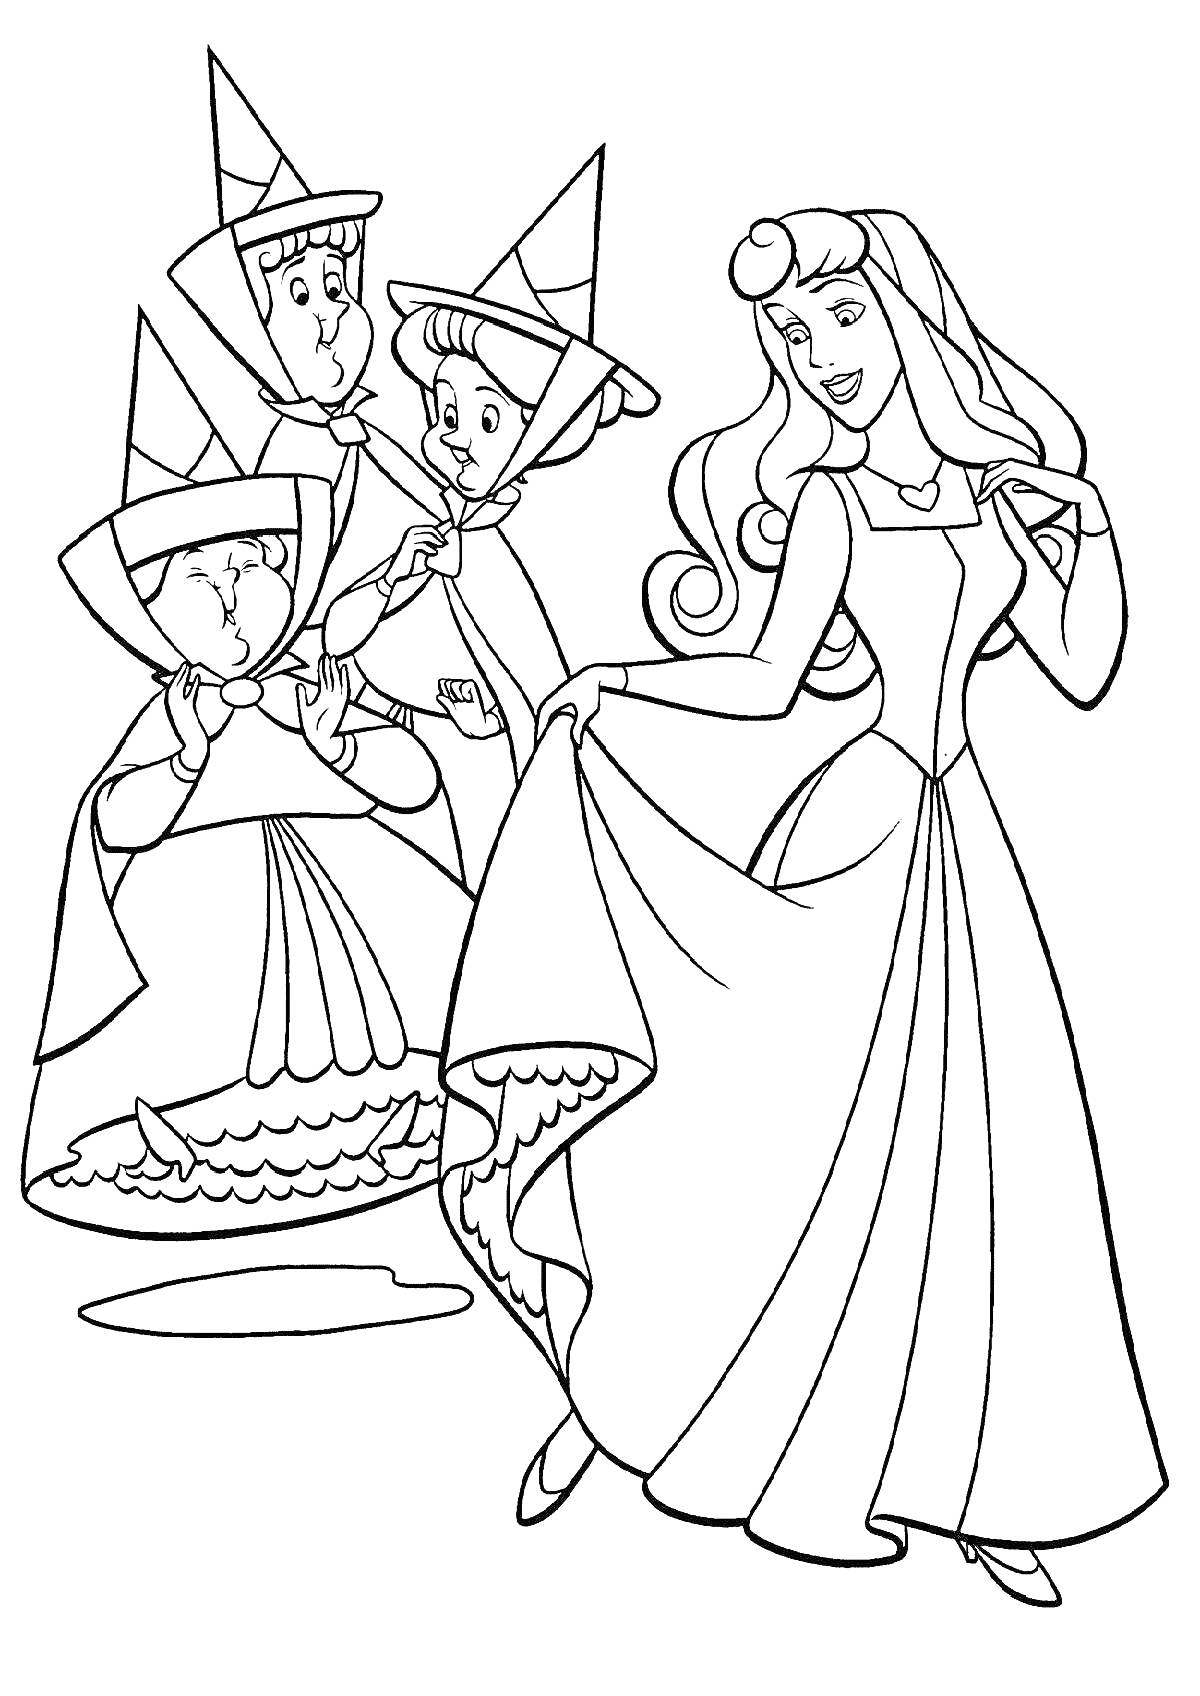 Раскраска Спящая красавица с тремя феями в шляпах и платьях